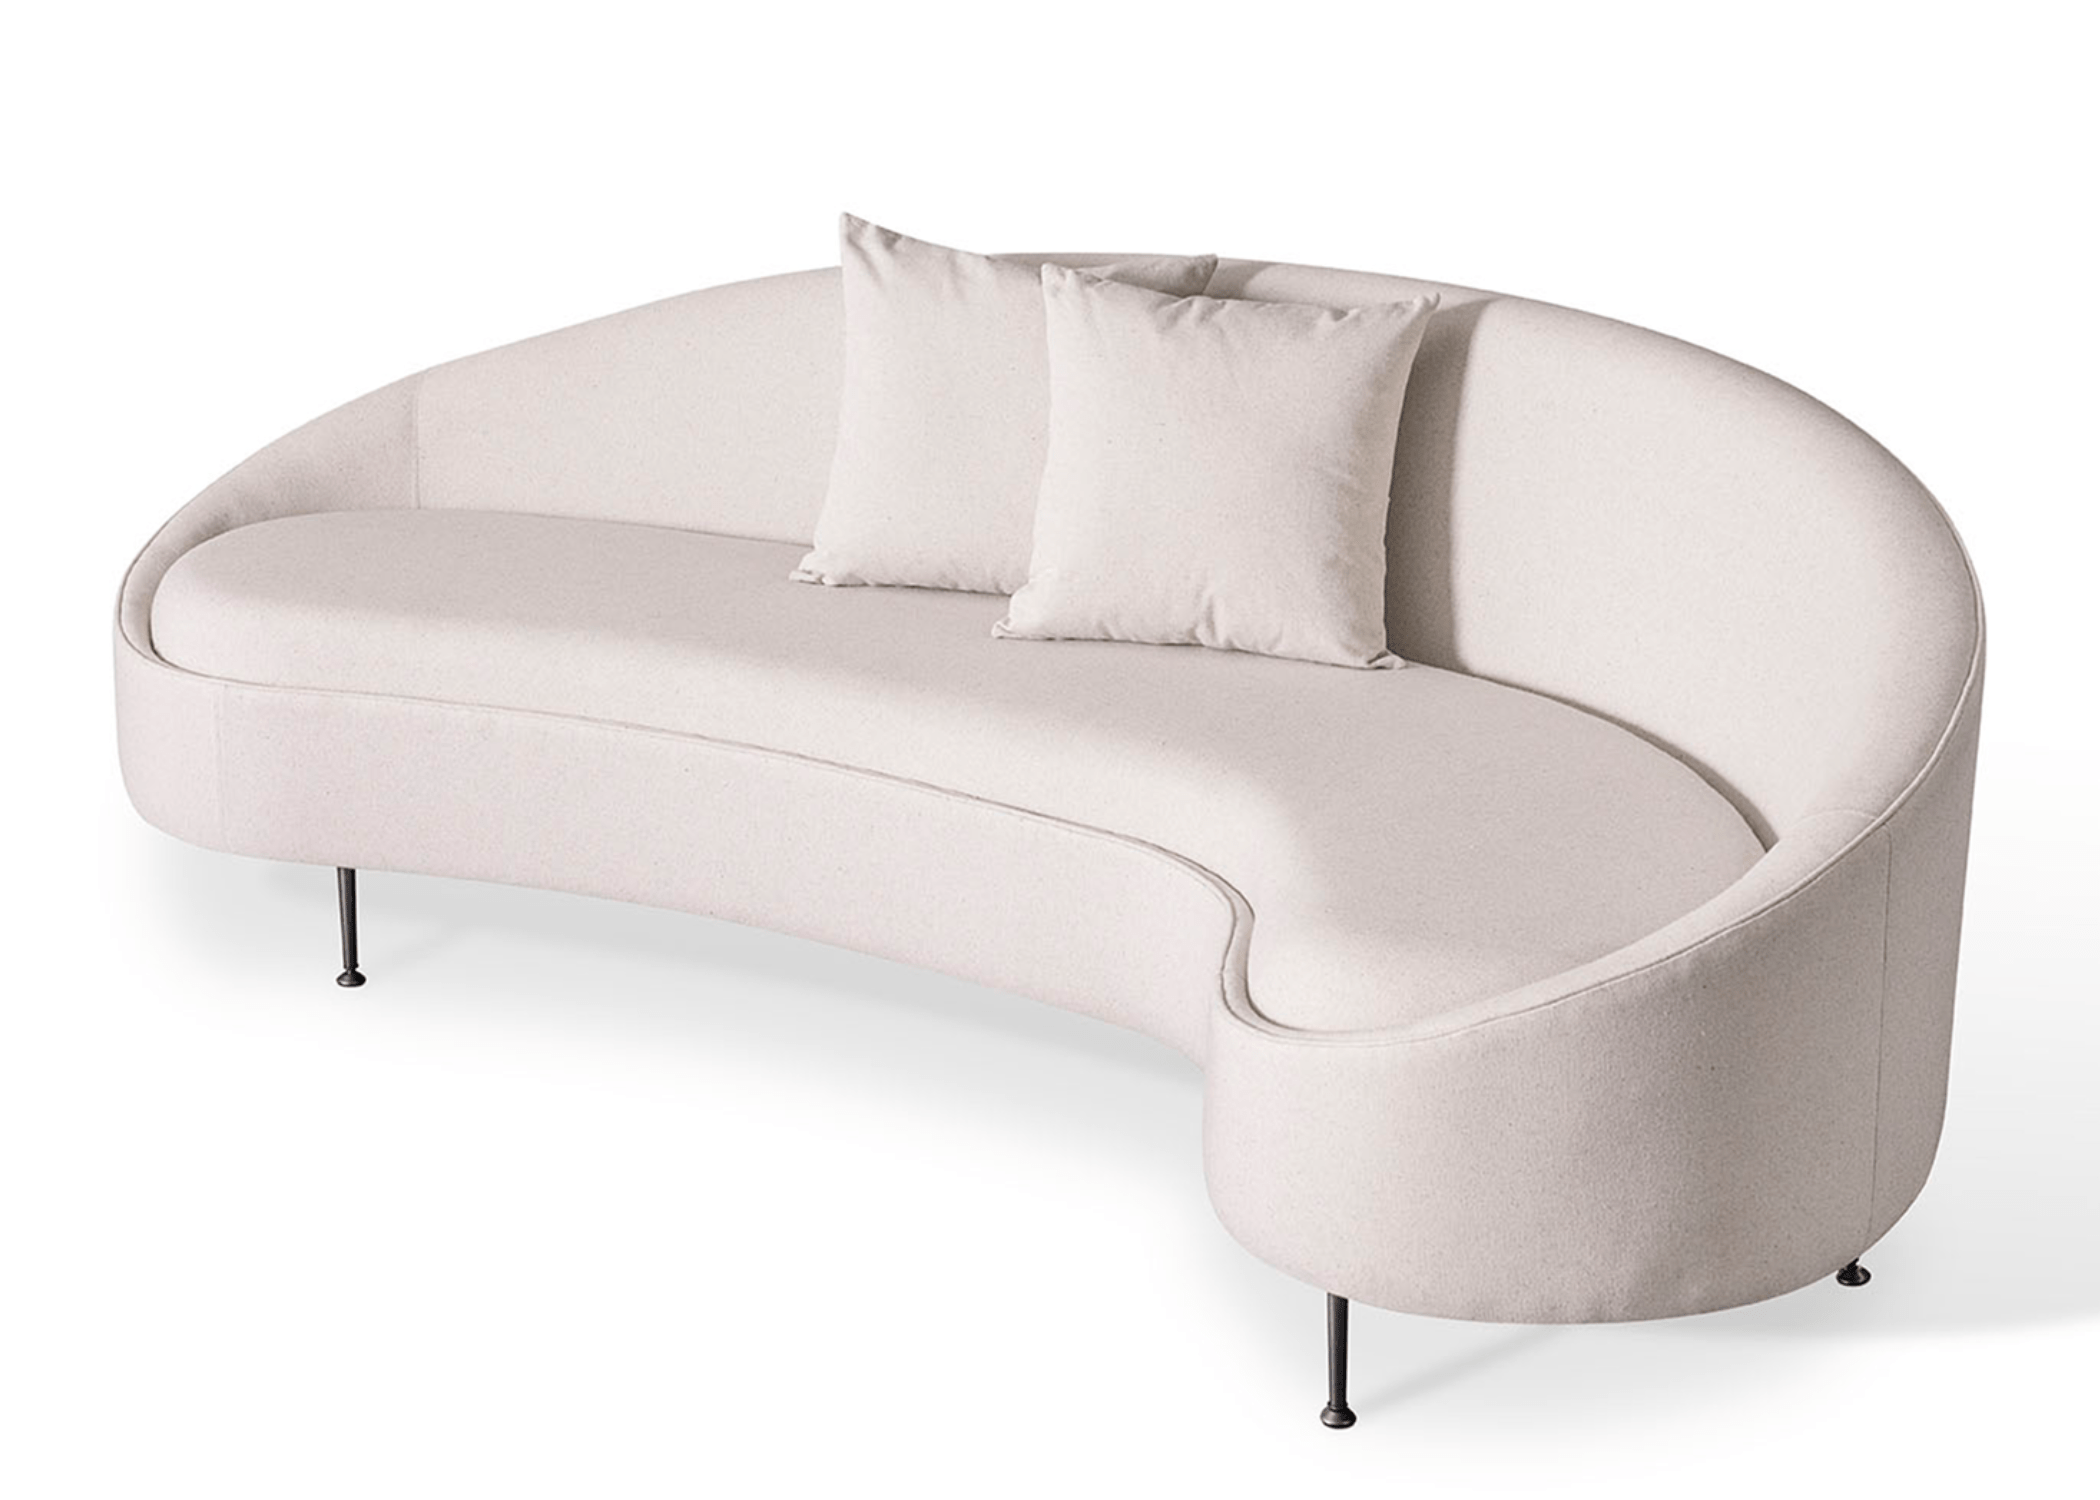 Sofá Donatello elegante, com design curvo e aconchegante, perfeito para ambientes sofisticados.